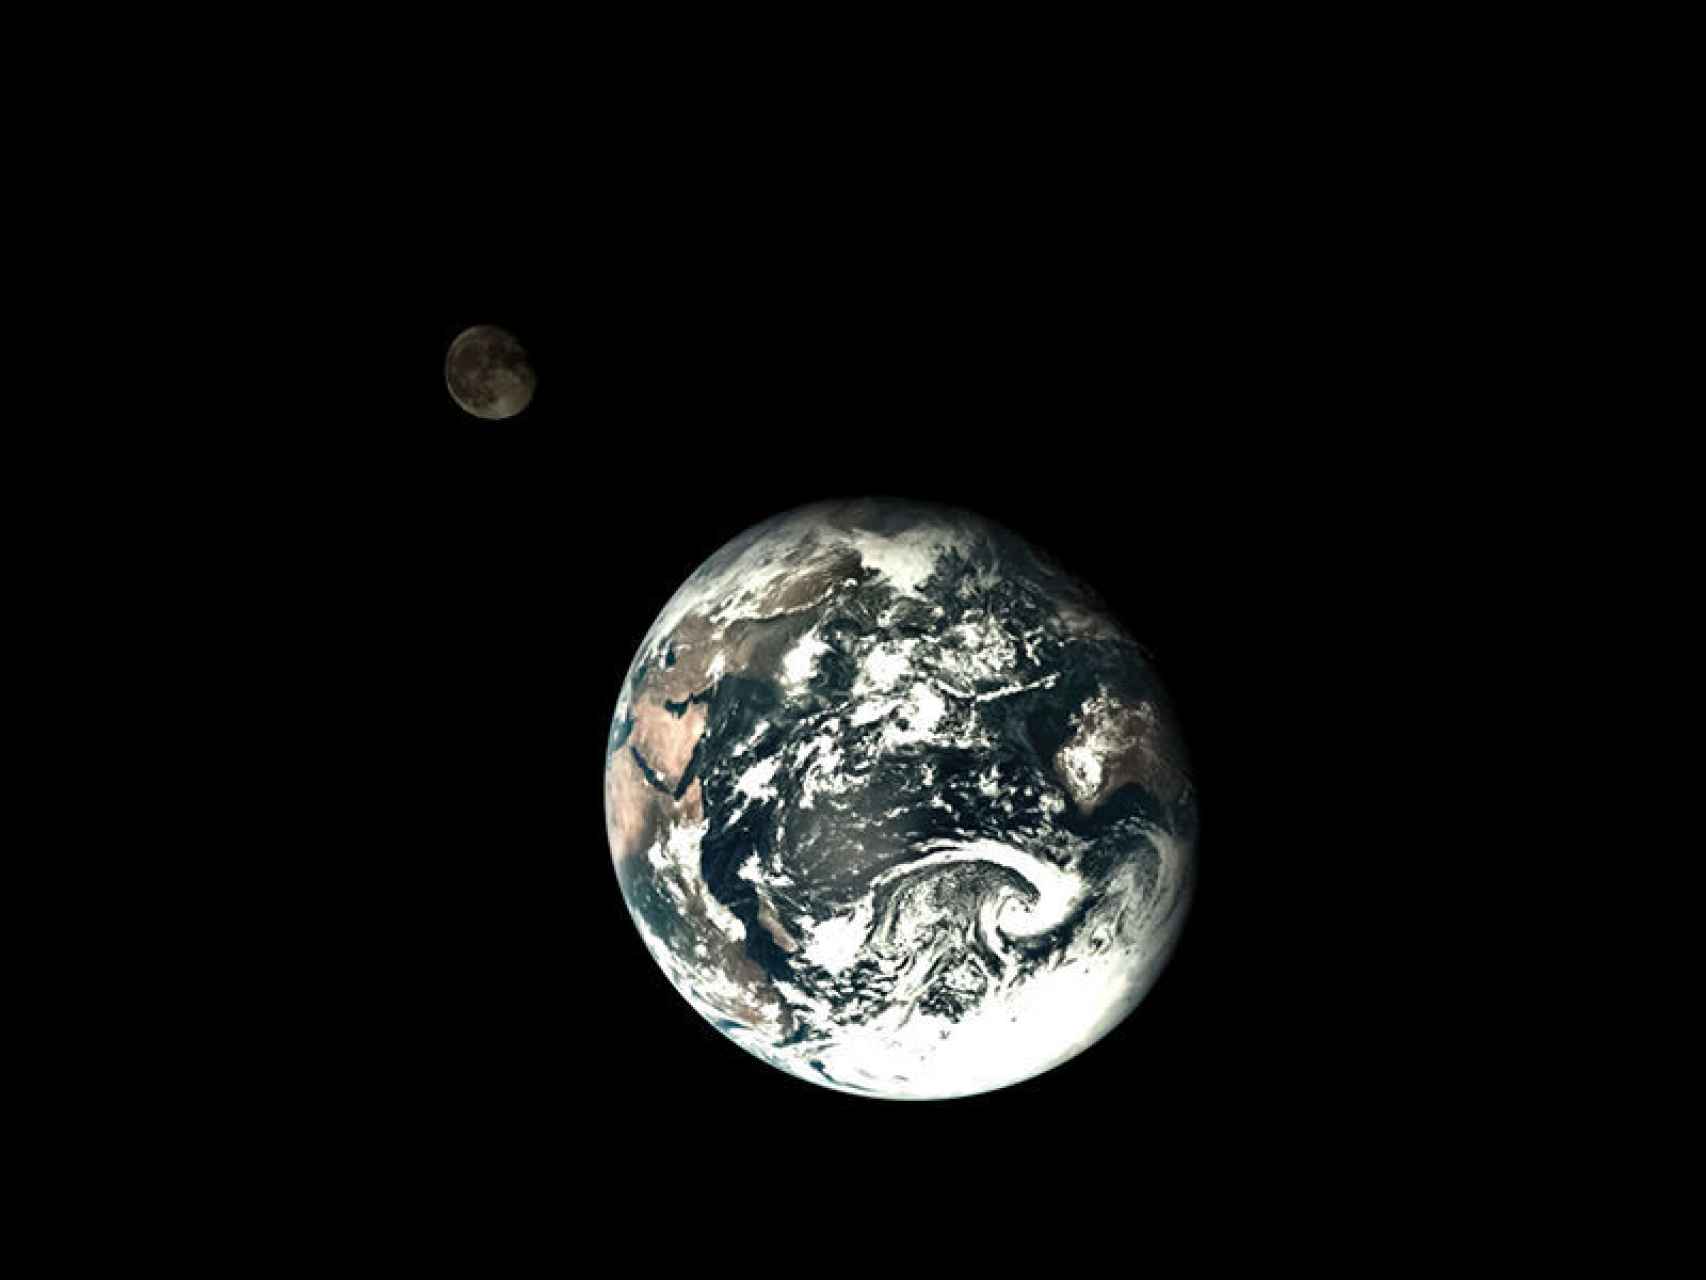 Imagen del sistema Tierra - Luna tomada en 2014 por la sonda Chang'e5.